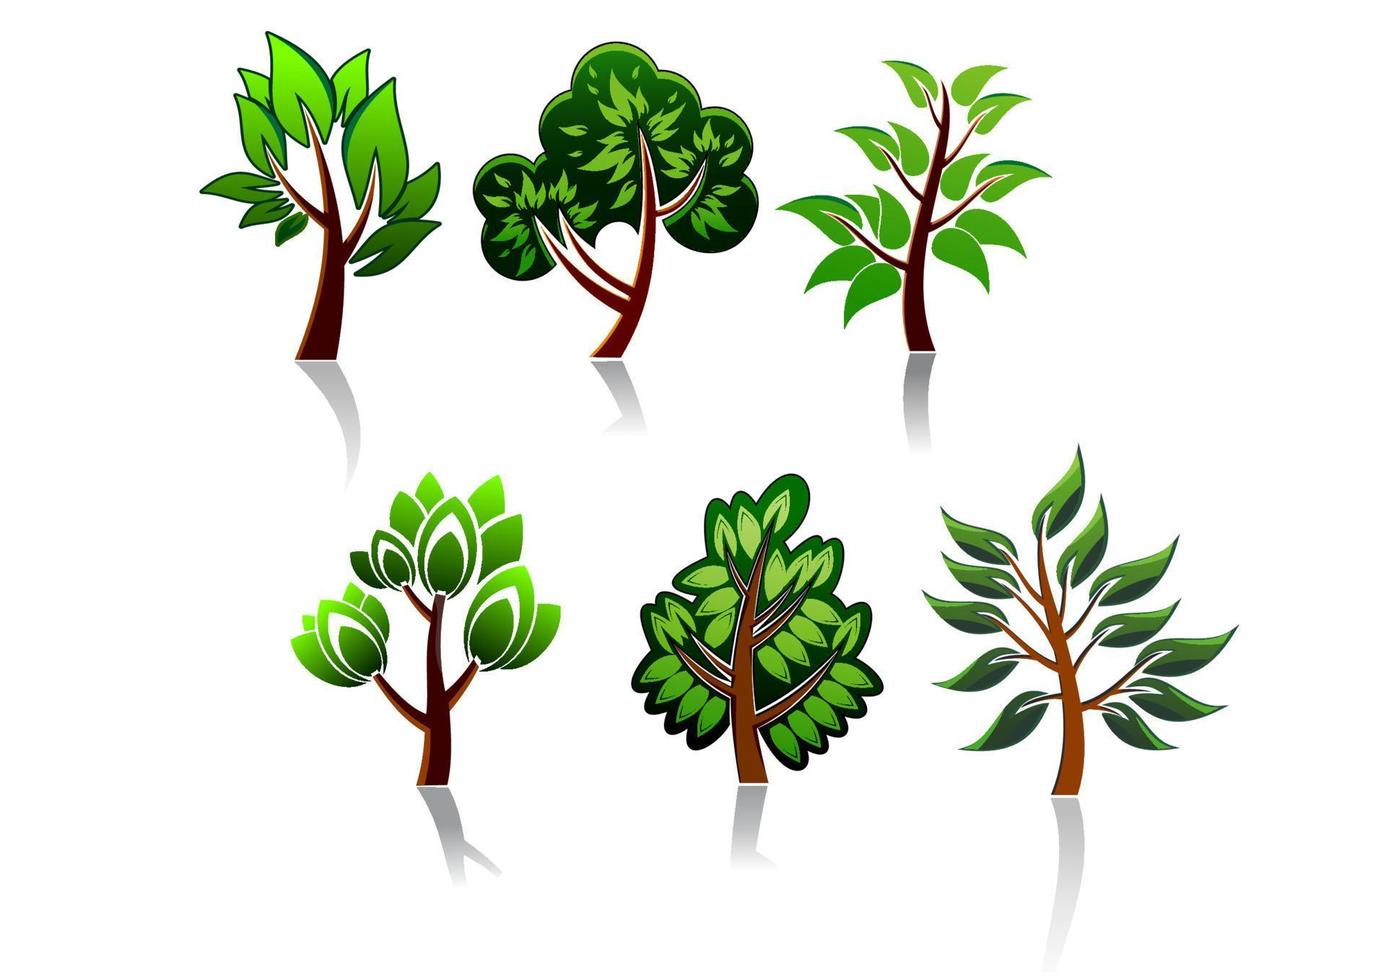 Cartoon tree icons vector